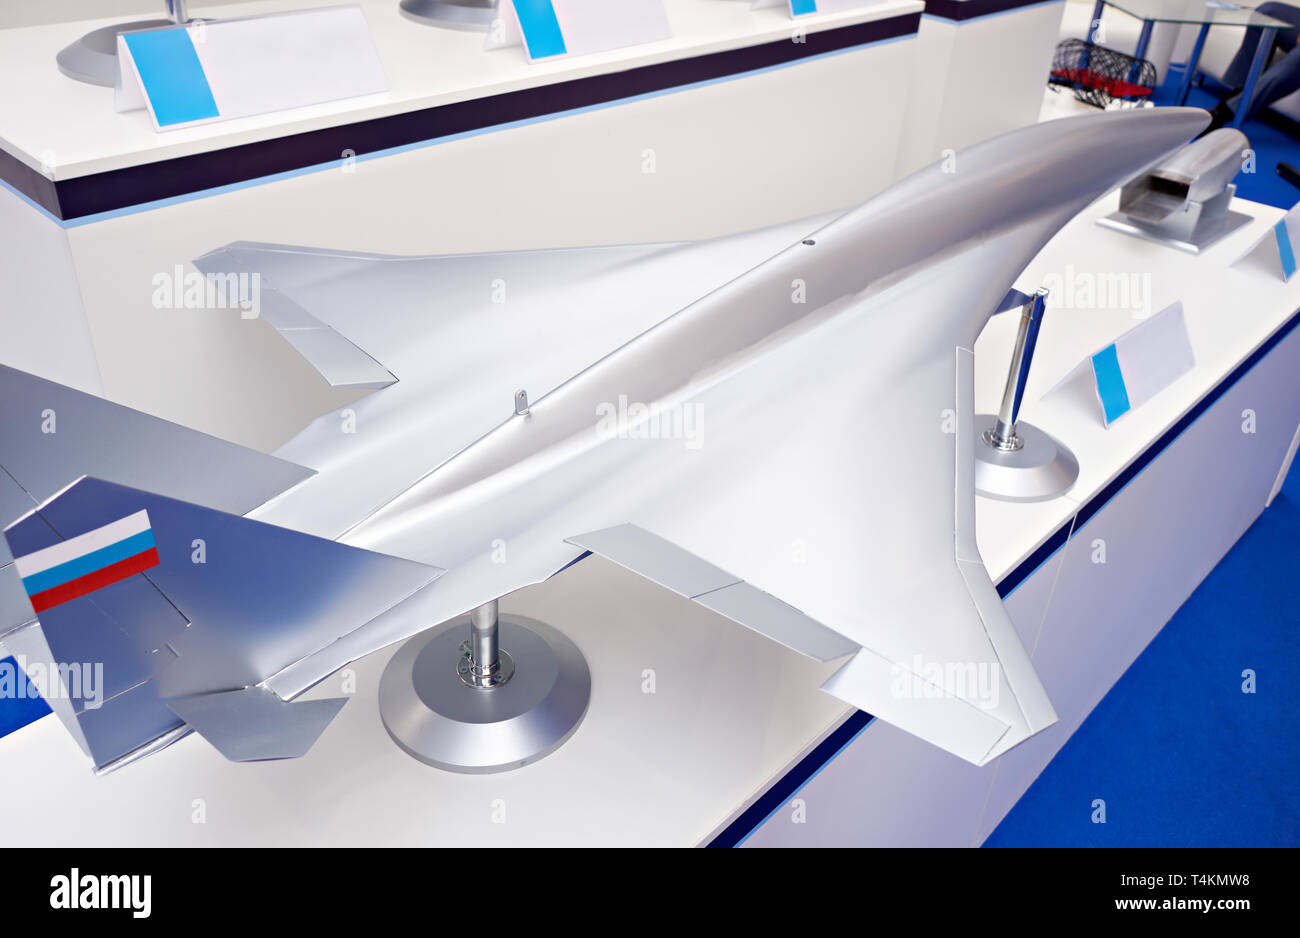 Modèle d'un avion de chasse militaire lors de l'exposition Banque D'Images